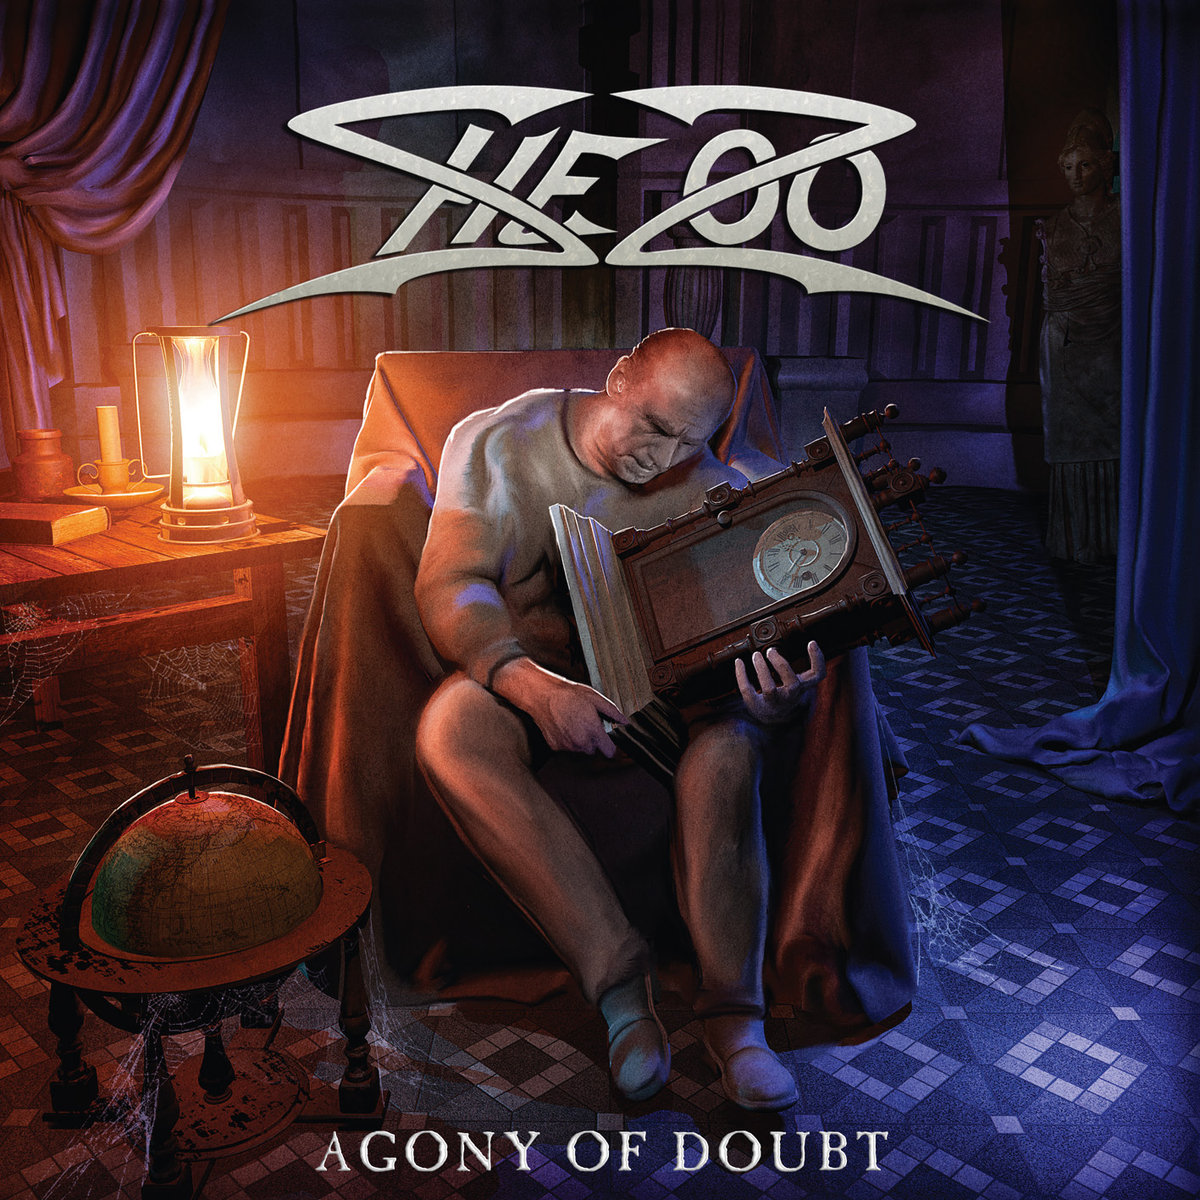 SHEZOO – Agony of Doubt